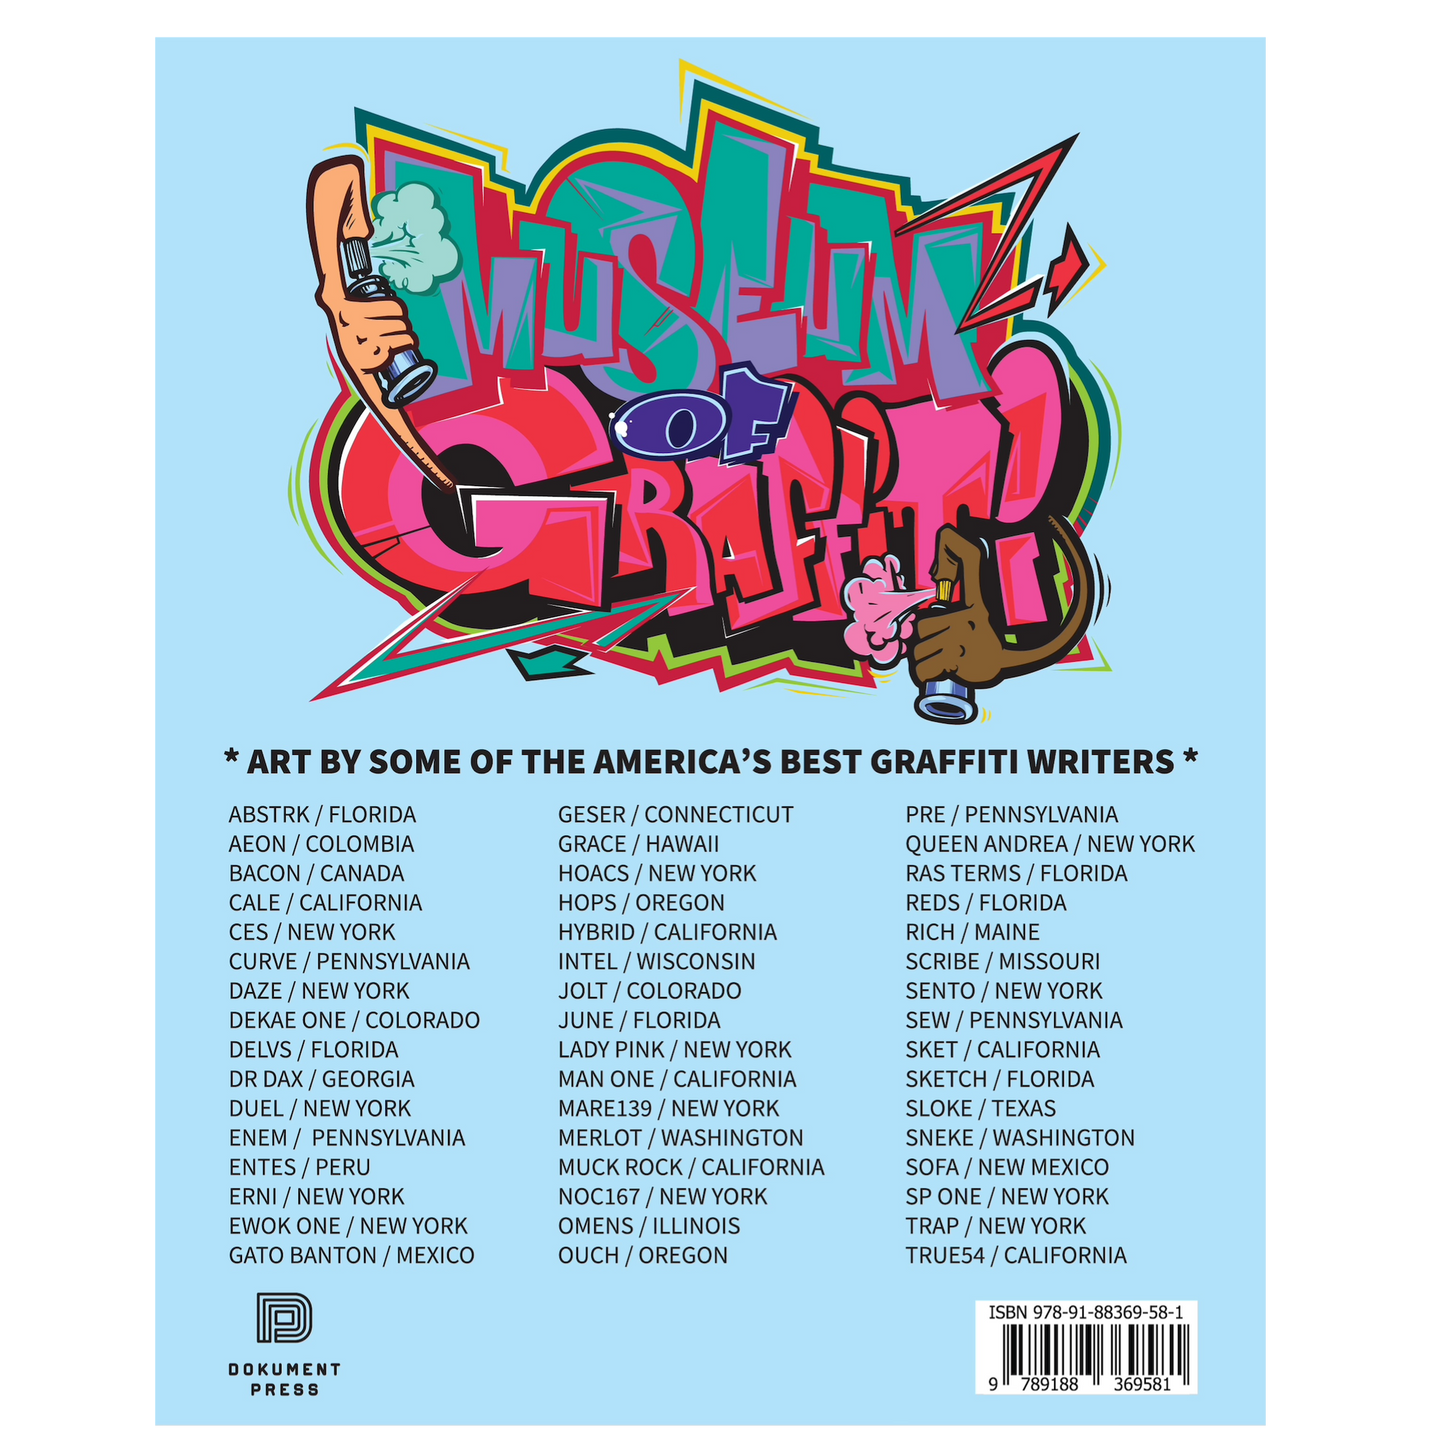 American Graffiti Coloring Book